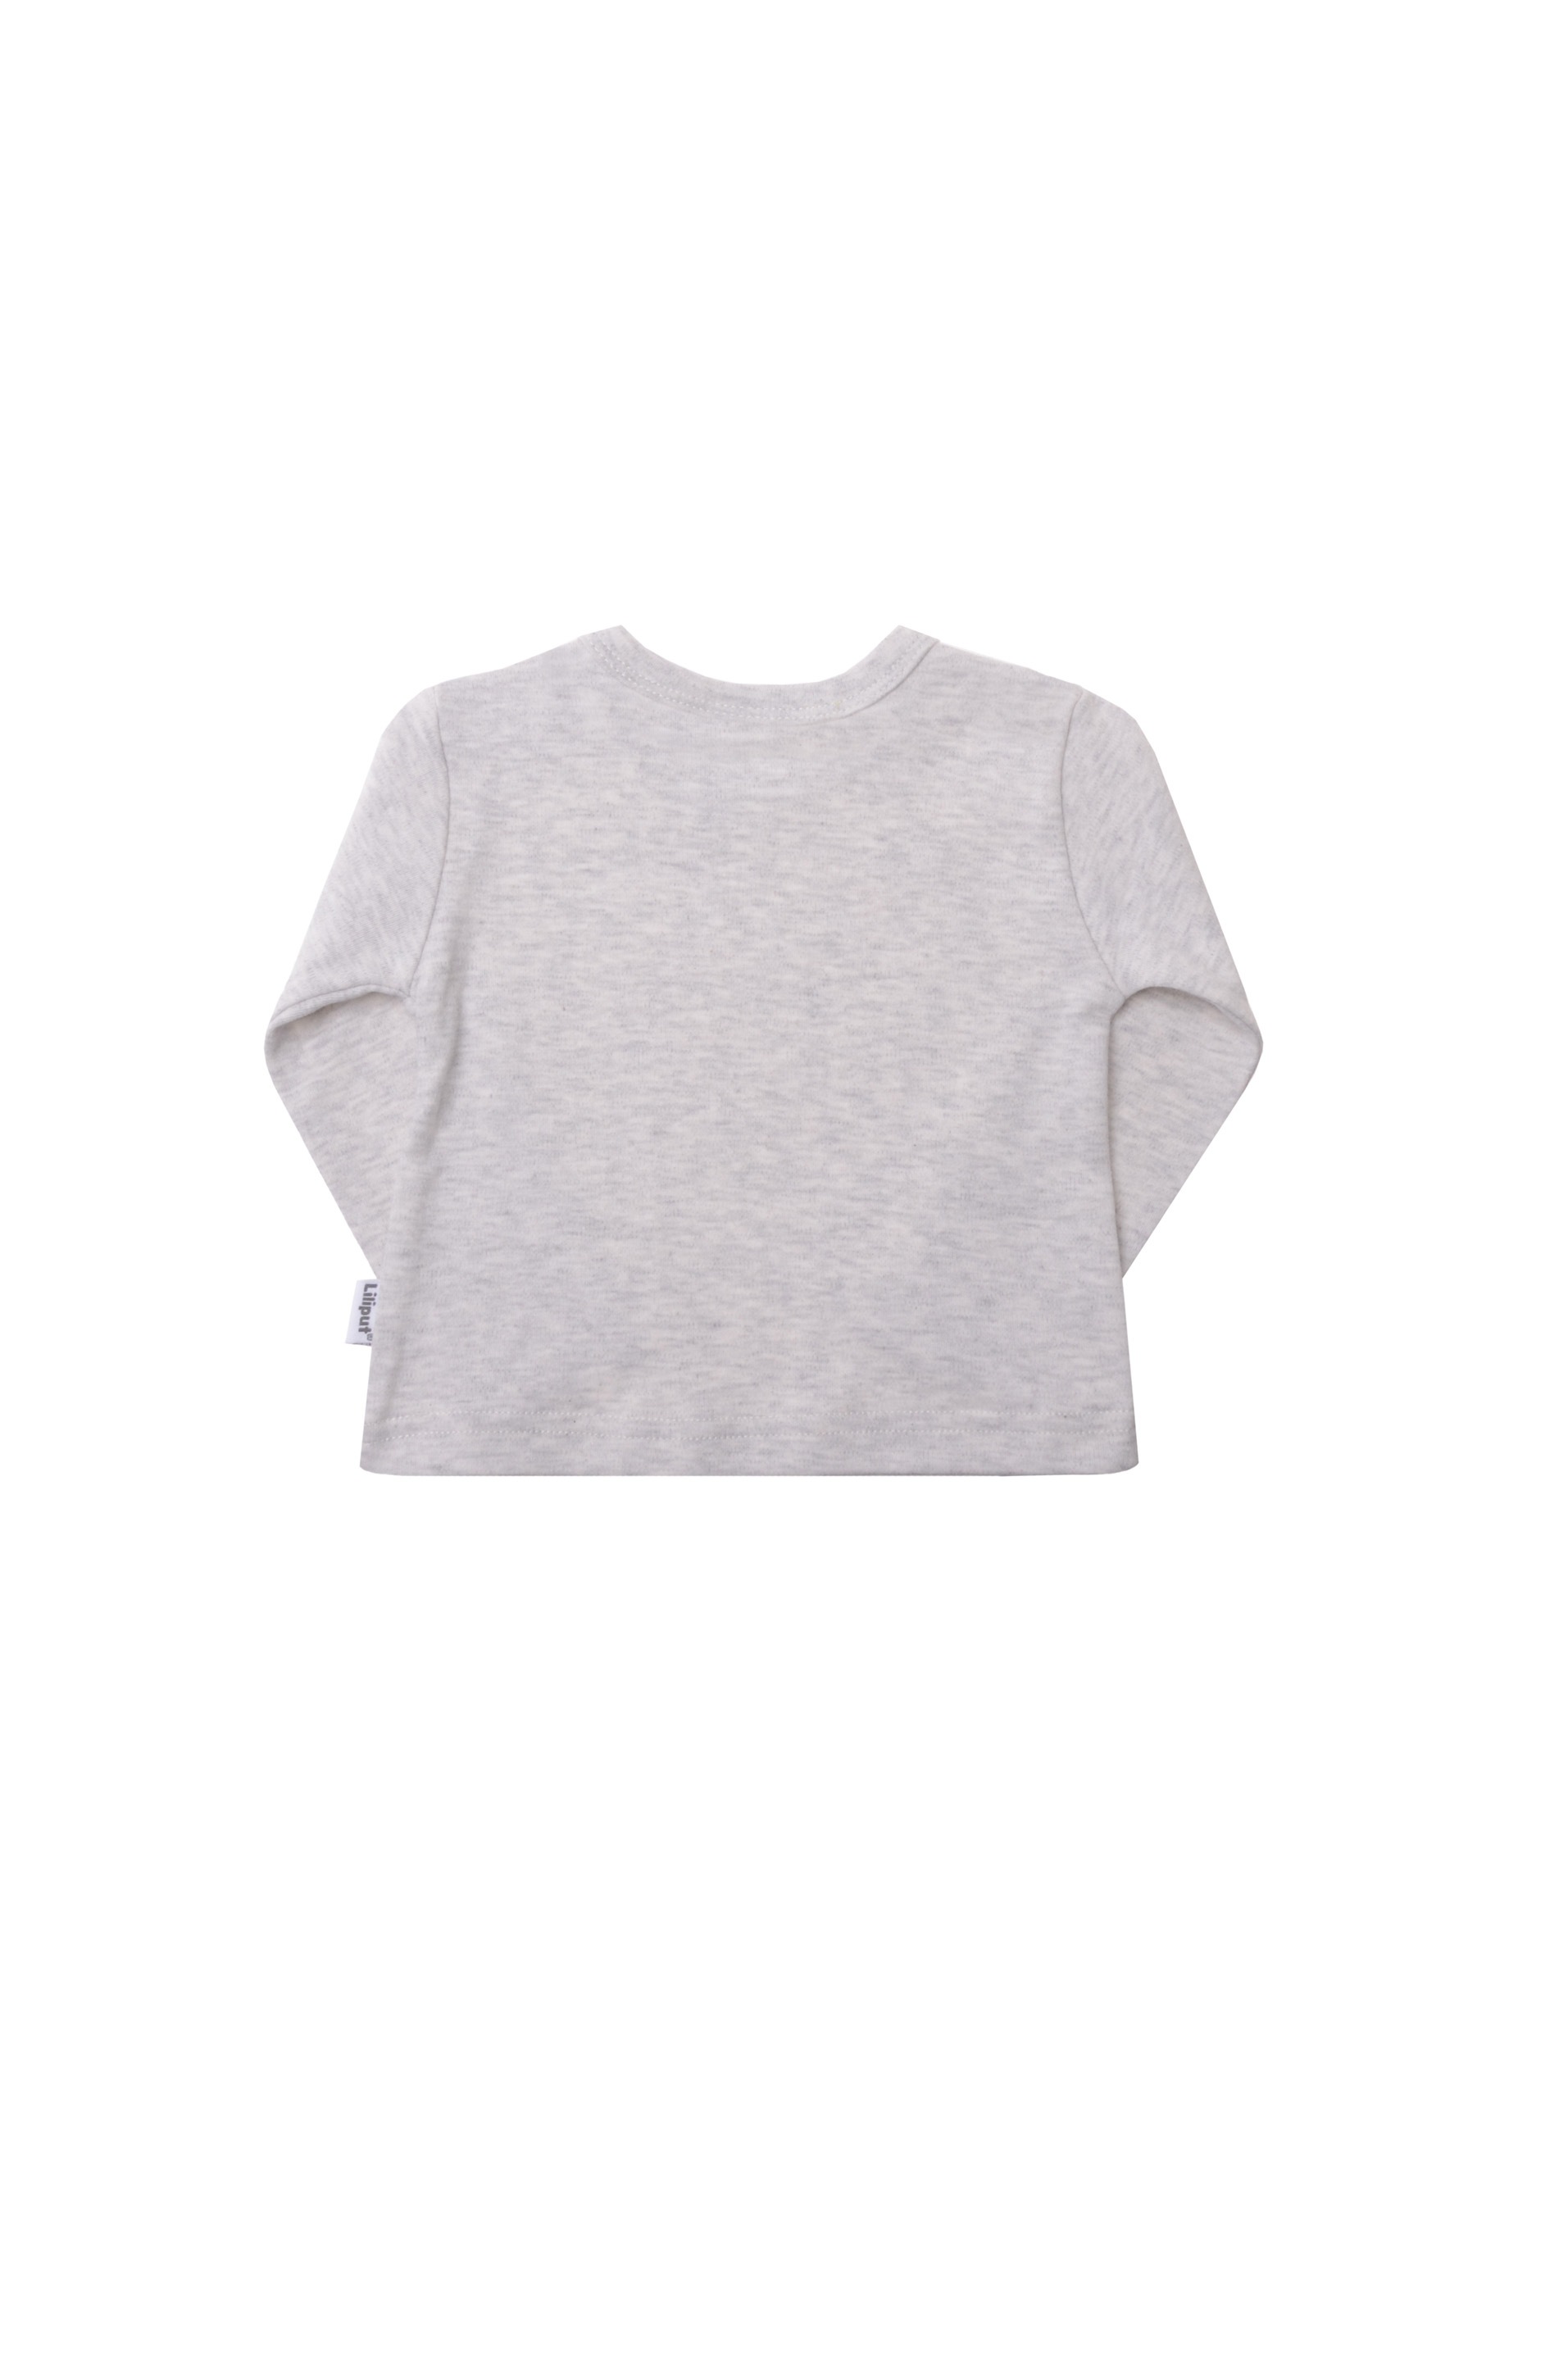 Liliput Langarmshirt »Liiput Baby«, mit praktischen Druckknöpfen online  kaufen | BAUR